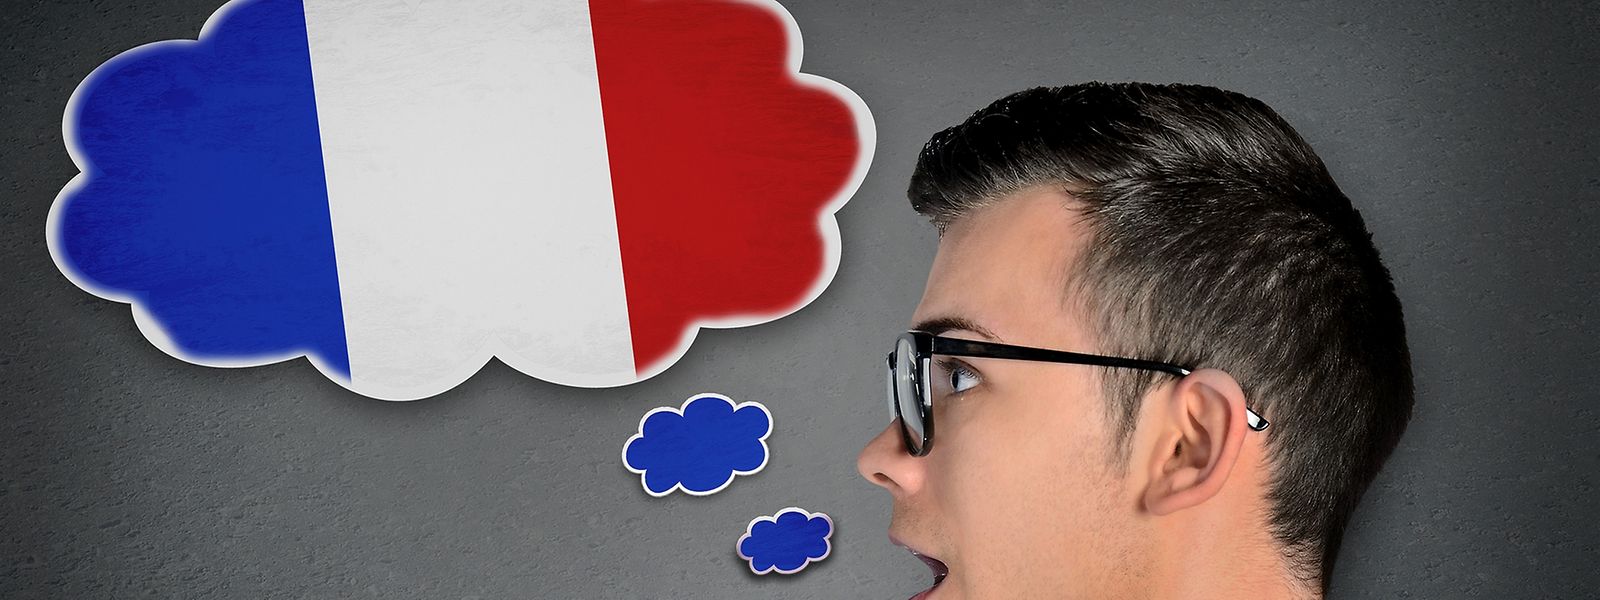  55.8% des entreprises interrogées utilisent le français comme langue principale